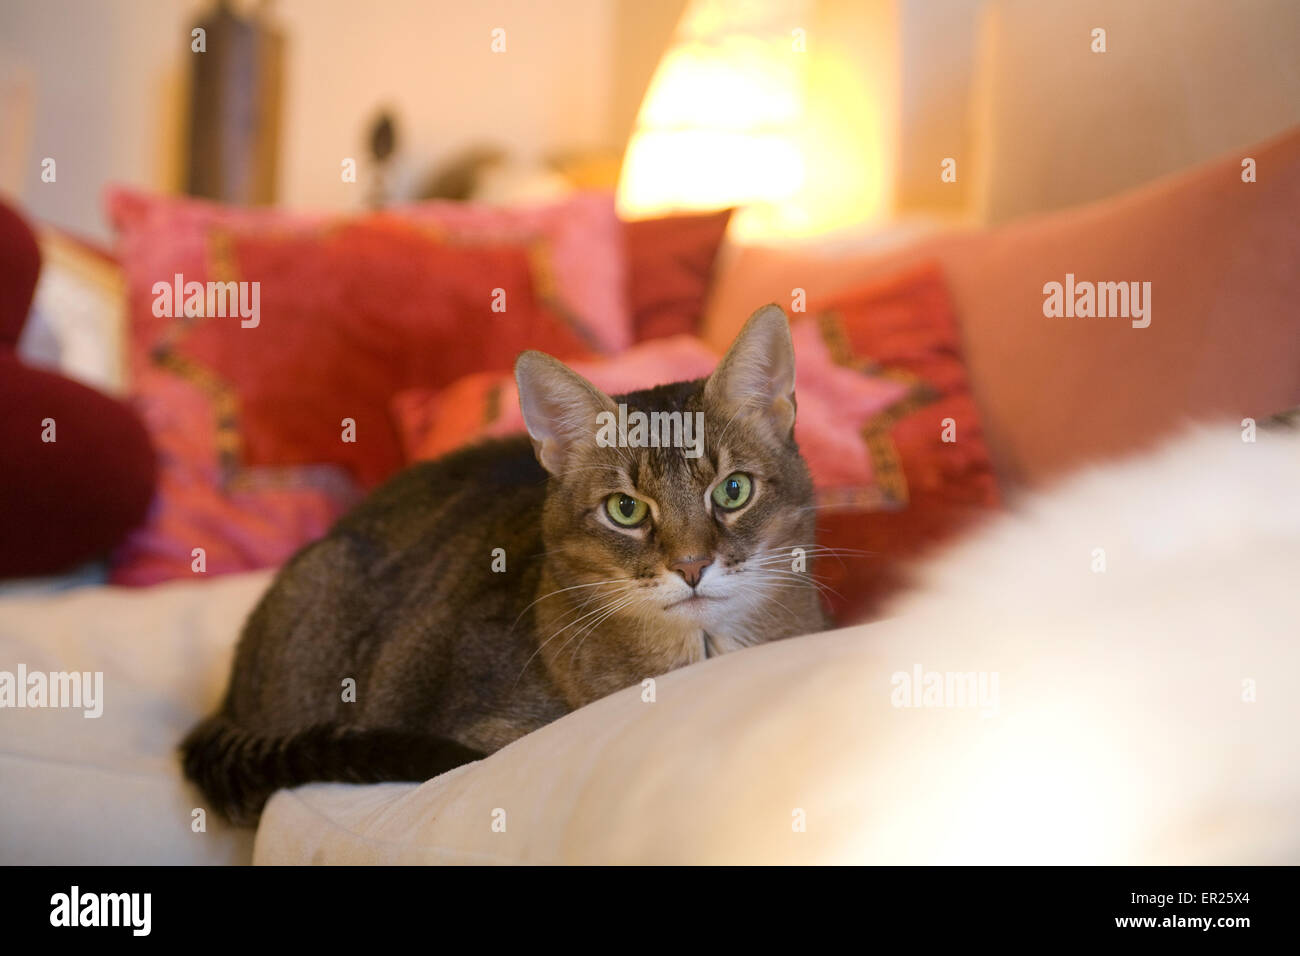 Europe, Germany, cat on a couch.   Europa, Deutschland, Katze auf einem Sofa. Stock Photo